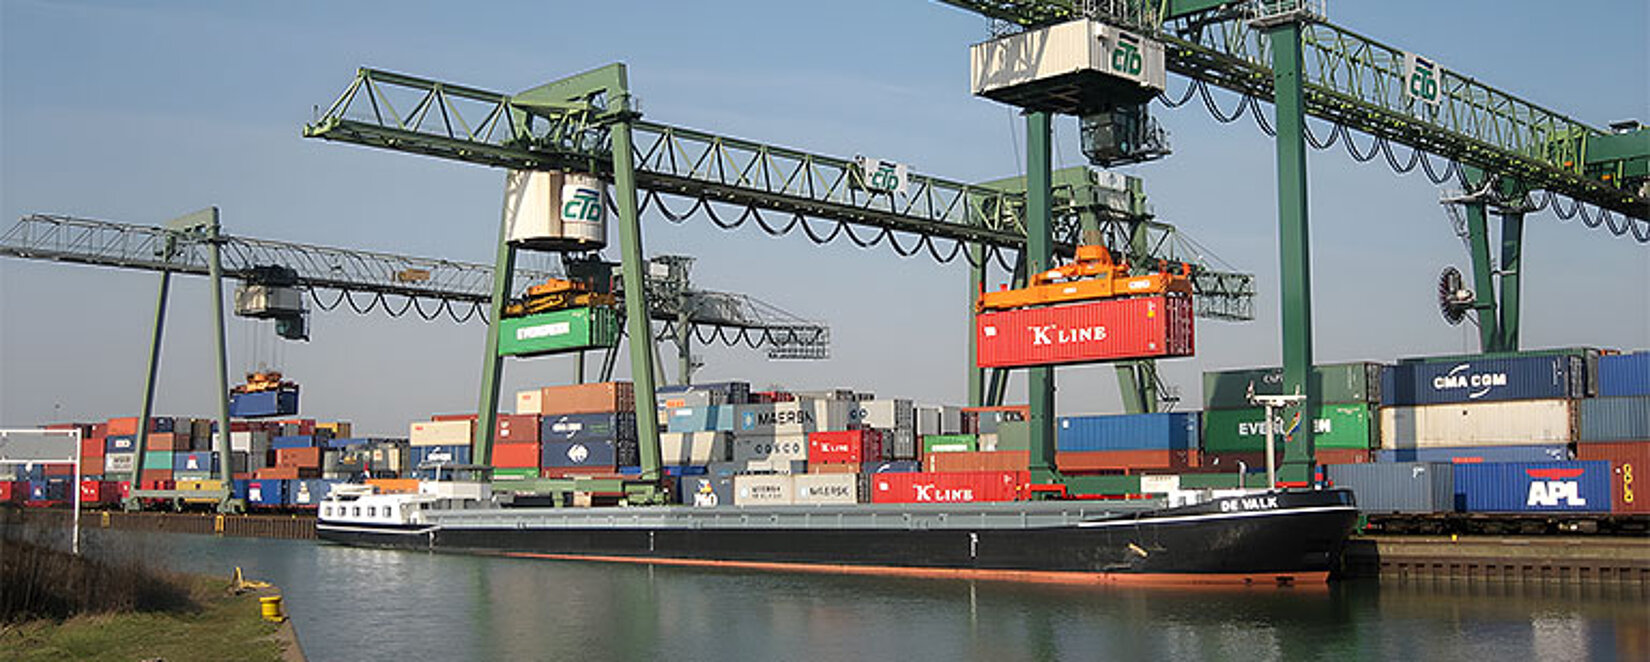 Container-Terminal Dortmund mit Fluss im Vordergrund